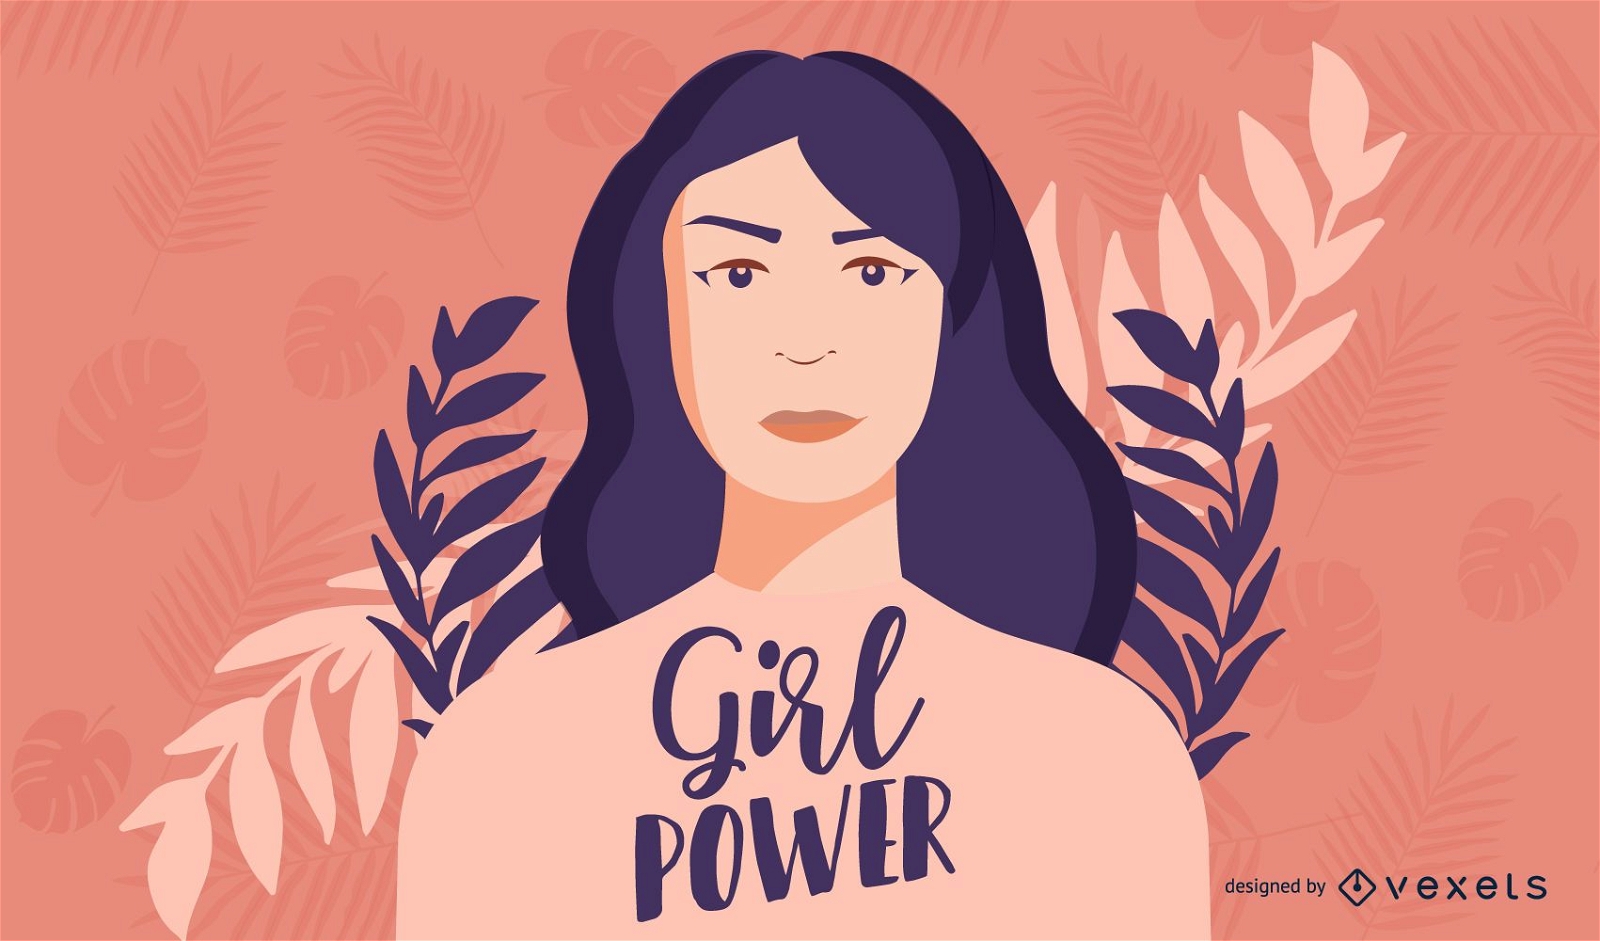 Projeto de ilustração do poder feminino